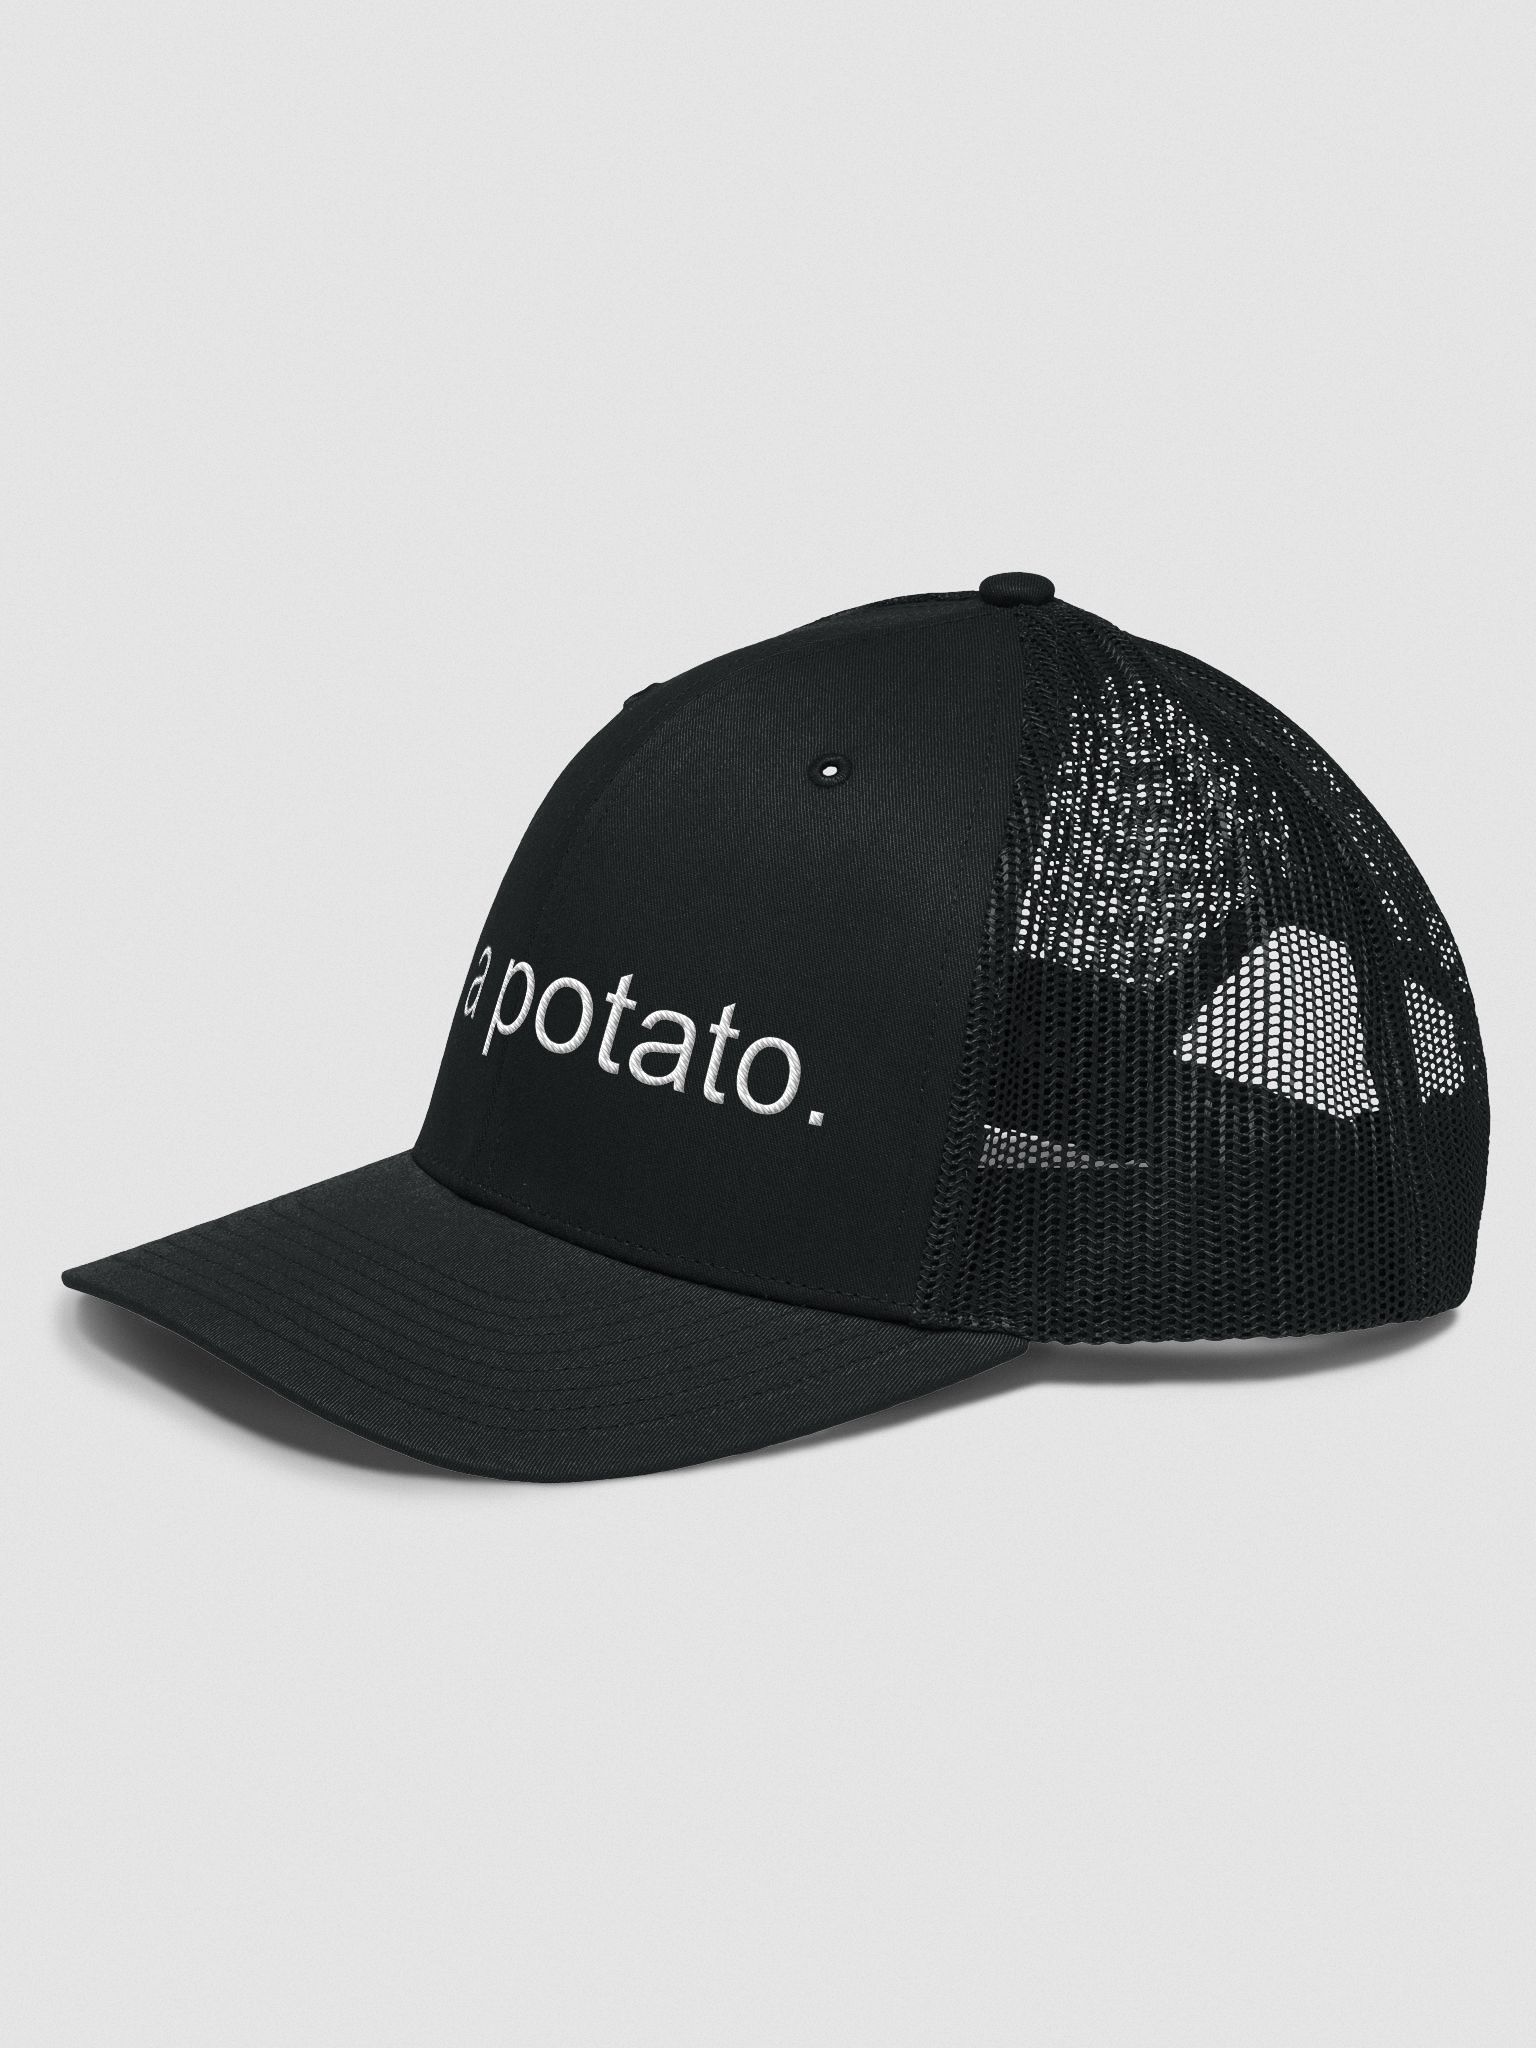 Potato Trucker Hat!